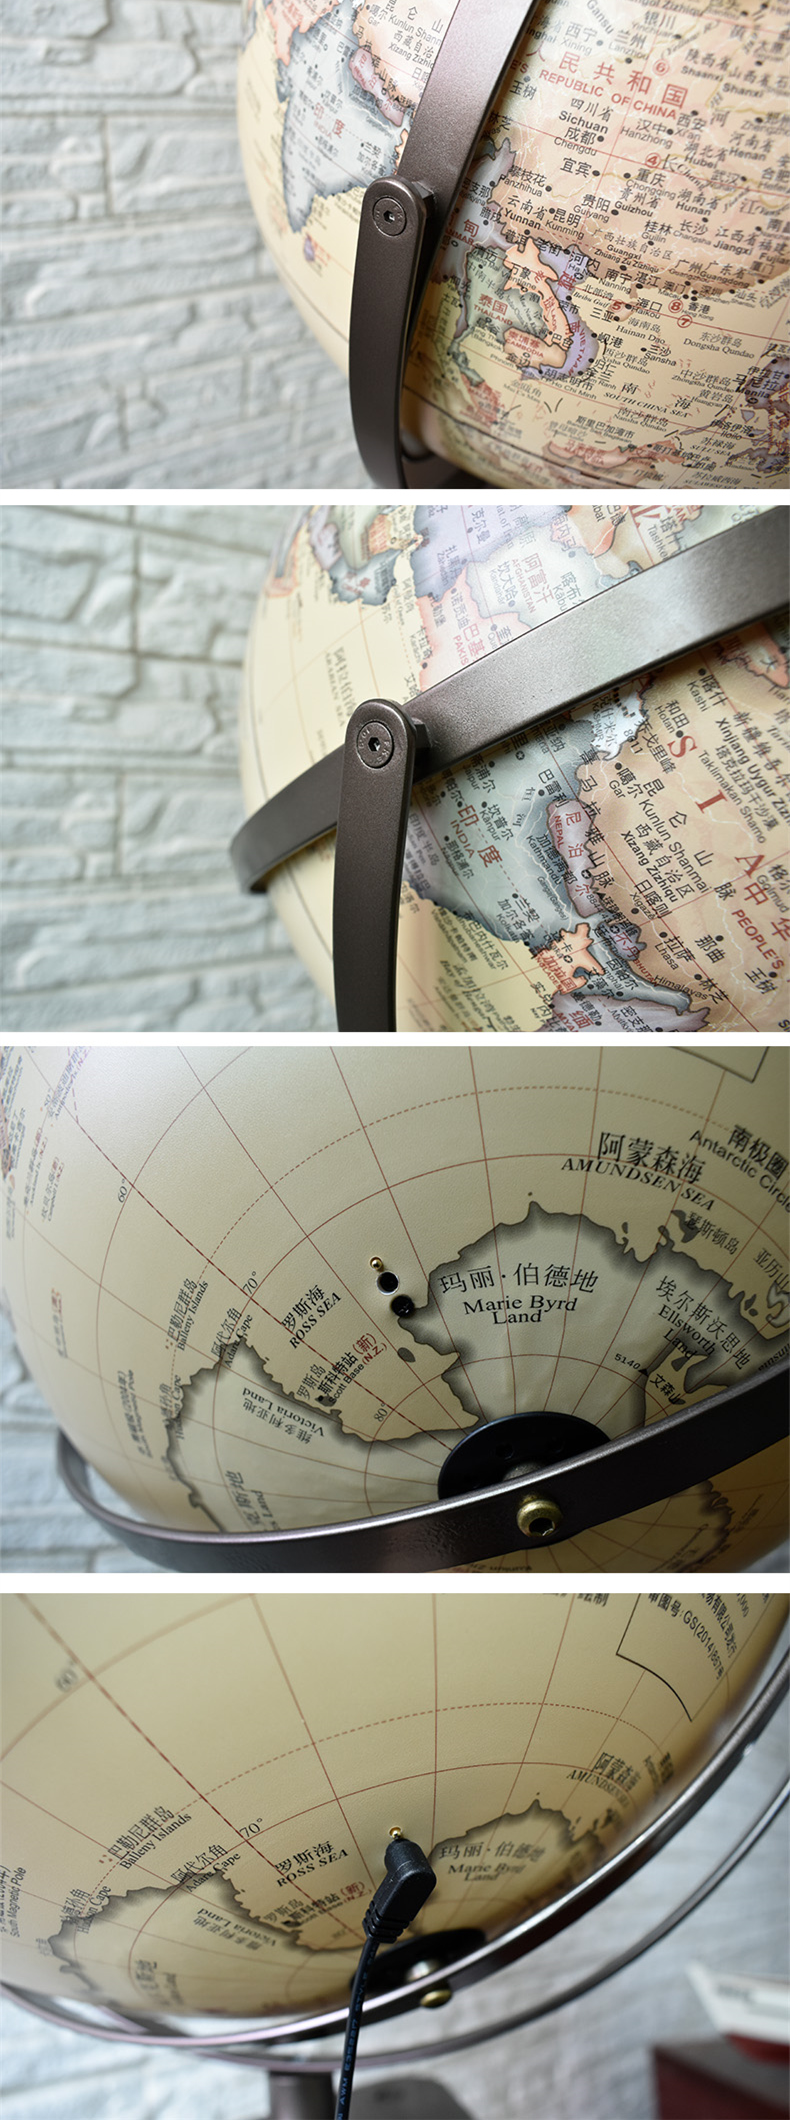 Dipper Globe